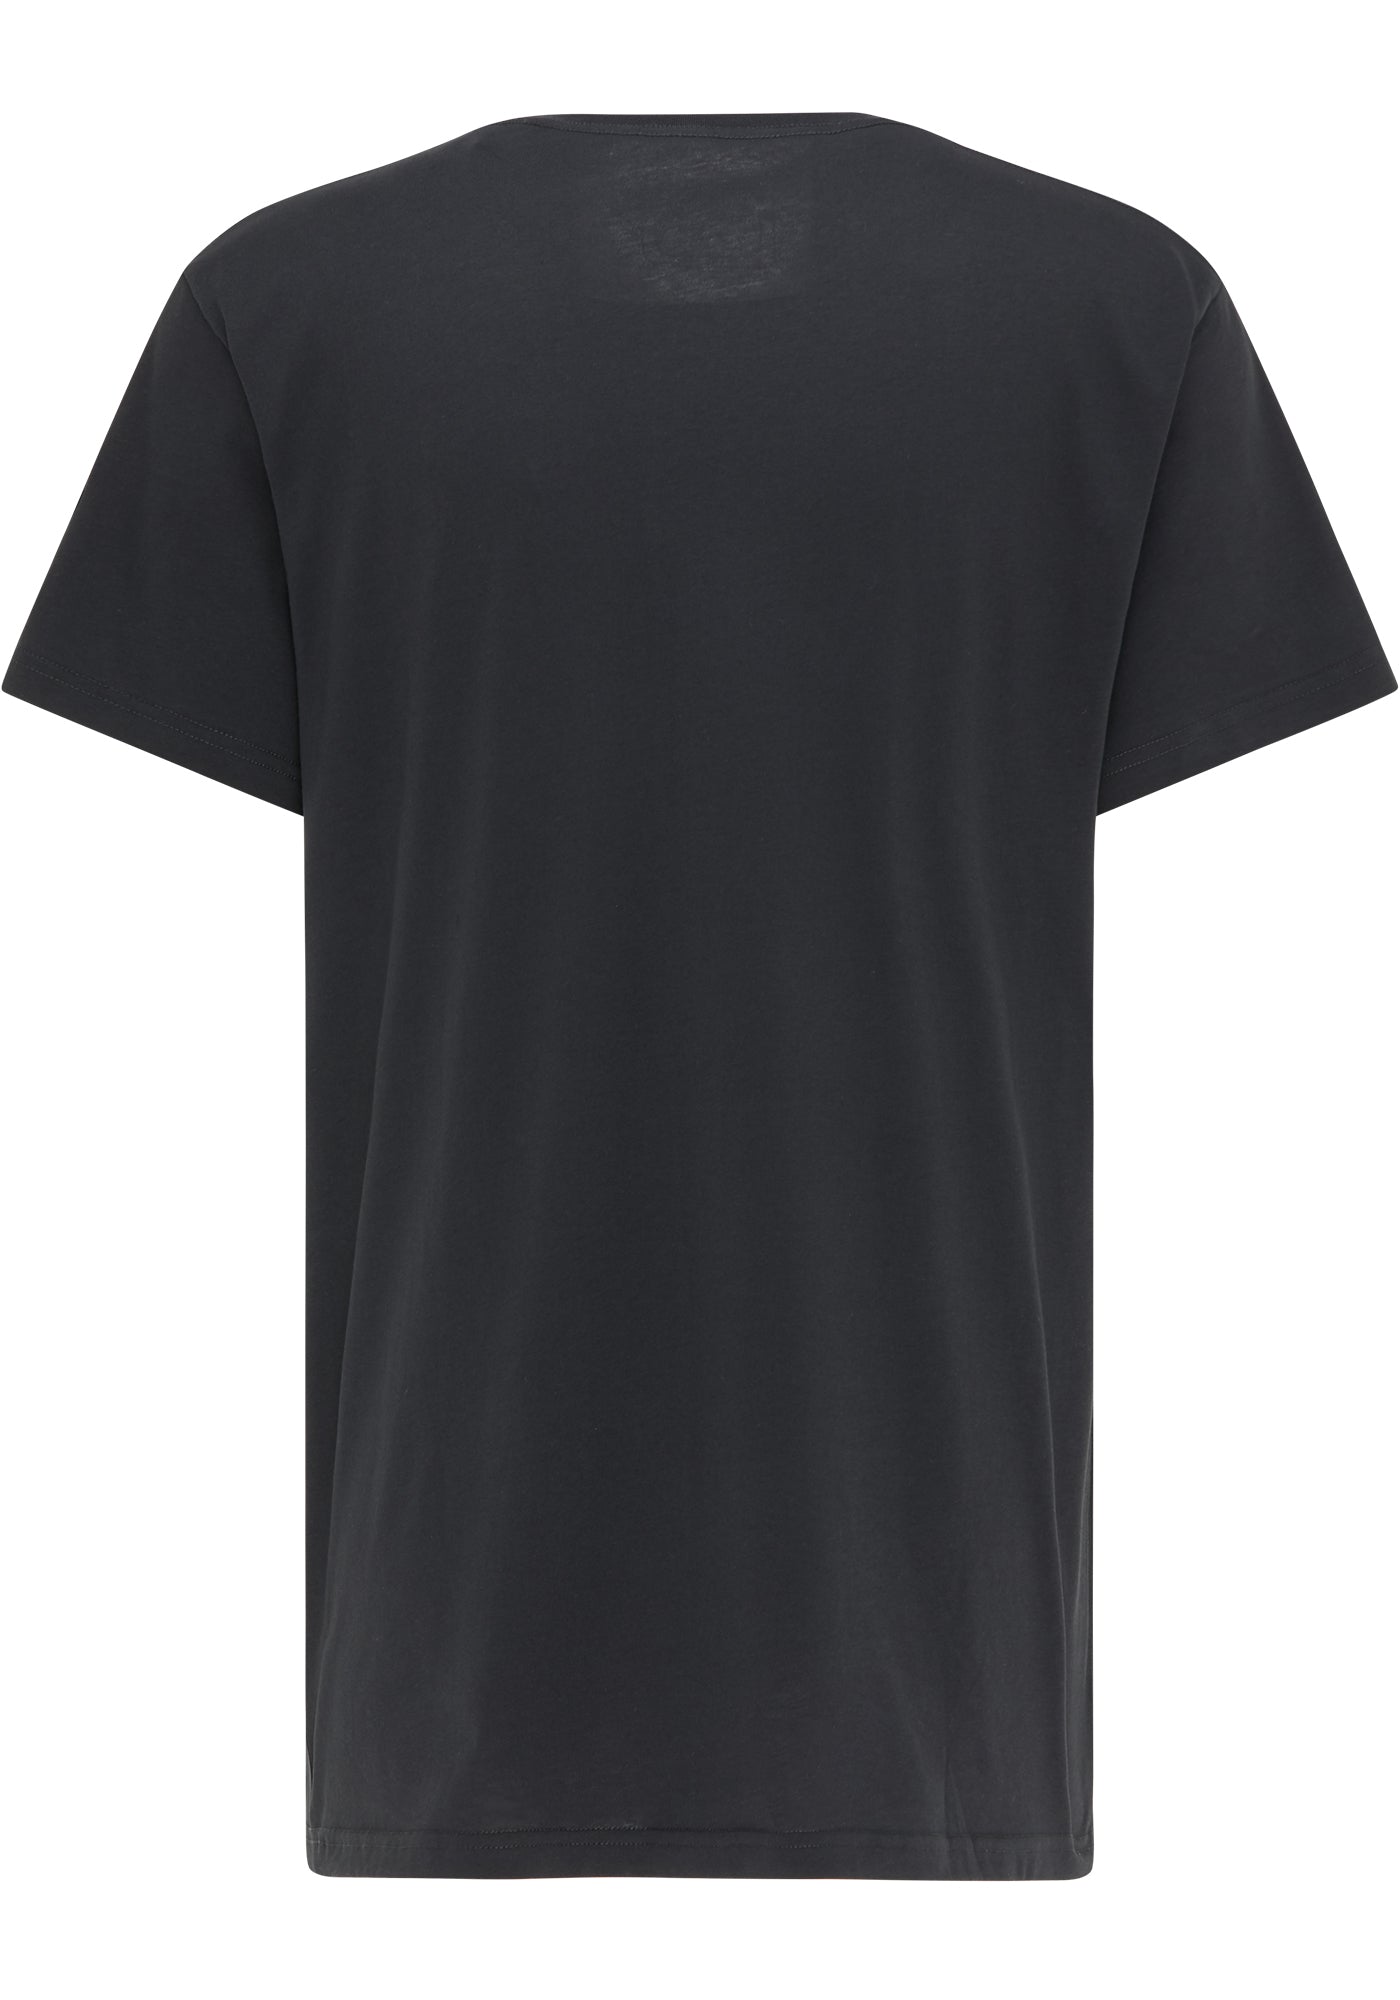 SOMWR INFLUENCER TEE T-Shirt BLK000